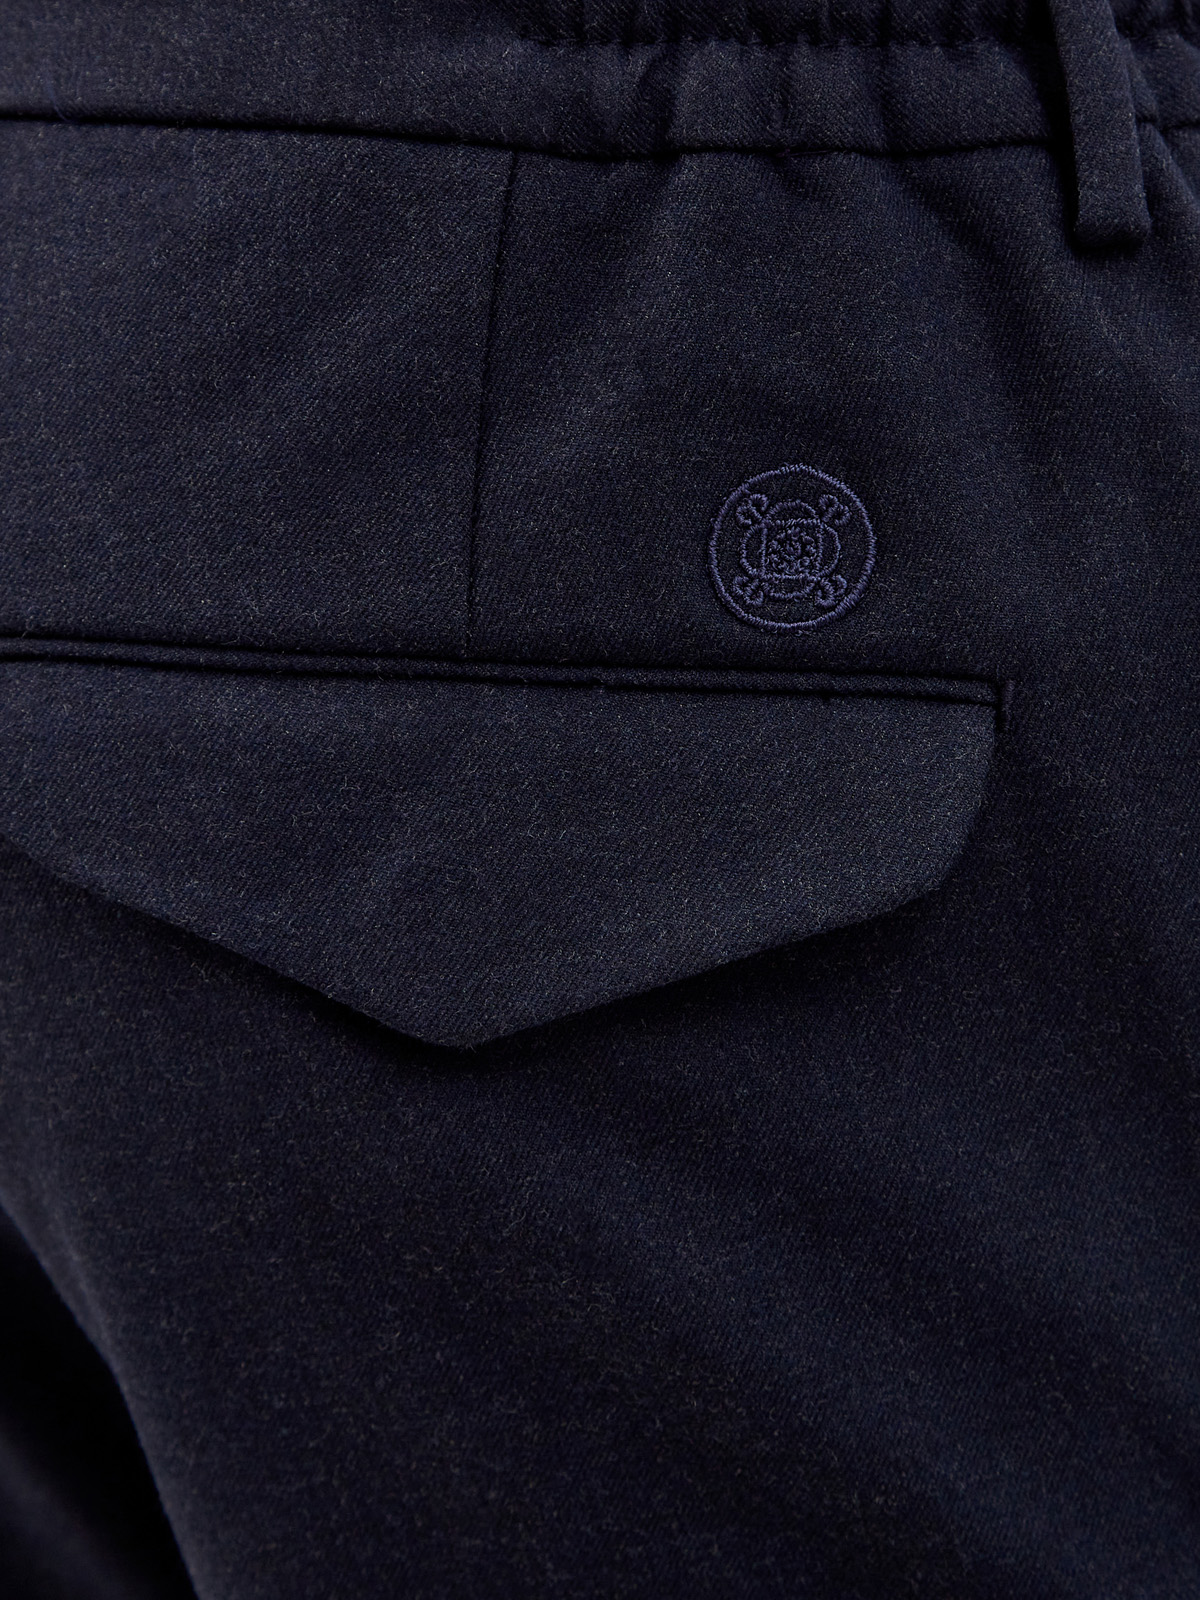 Шерстяные брюки с поясом на кулиске и вышитым логотипом CUDGI, цвет синий, размер 50;54;58;60;62 - фото 5